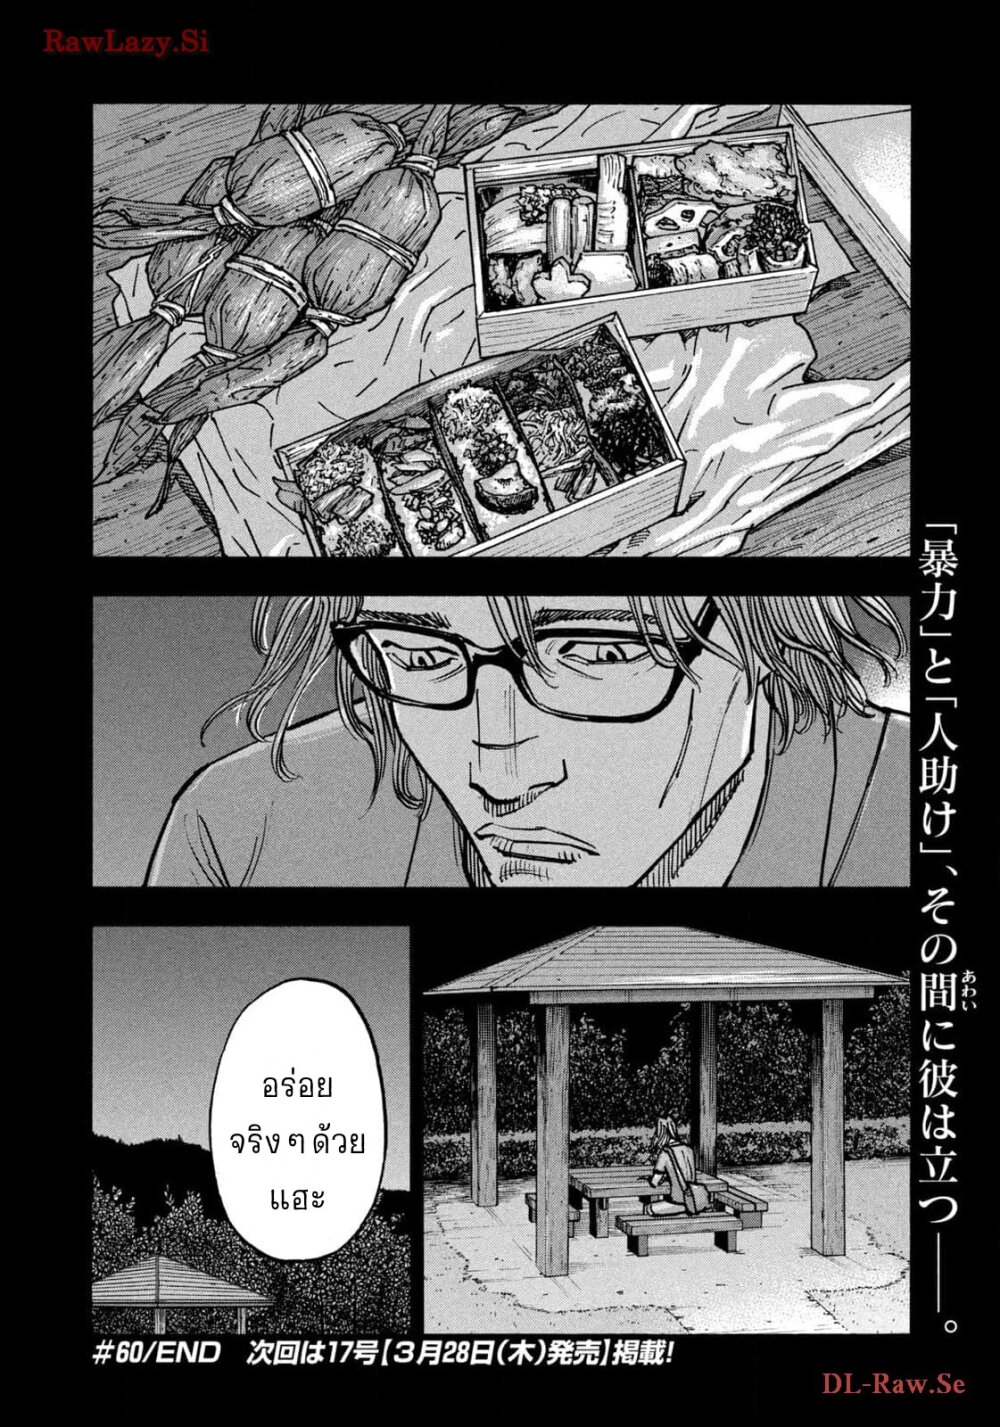 อ่านมังงะ Heiwa no Kuni no Shimazaki e ตอนที่ 60/18.jpg